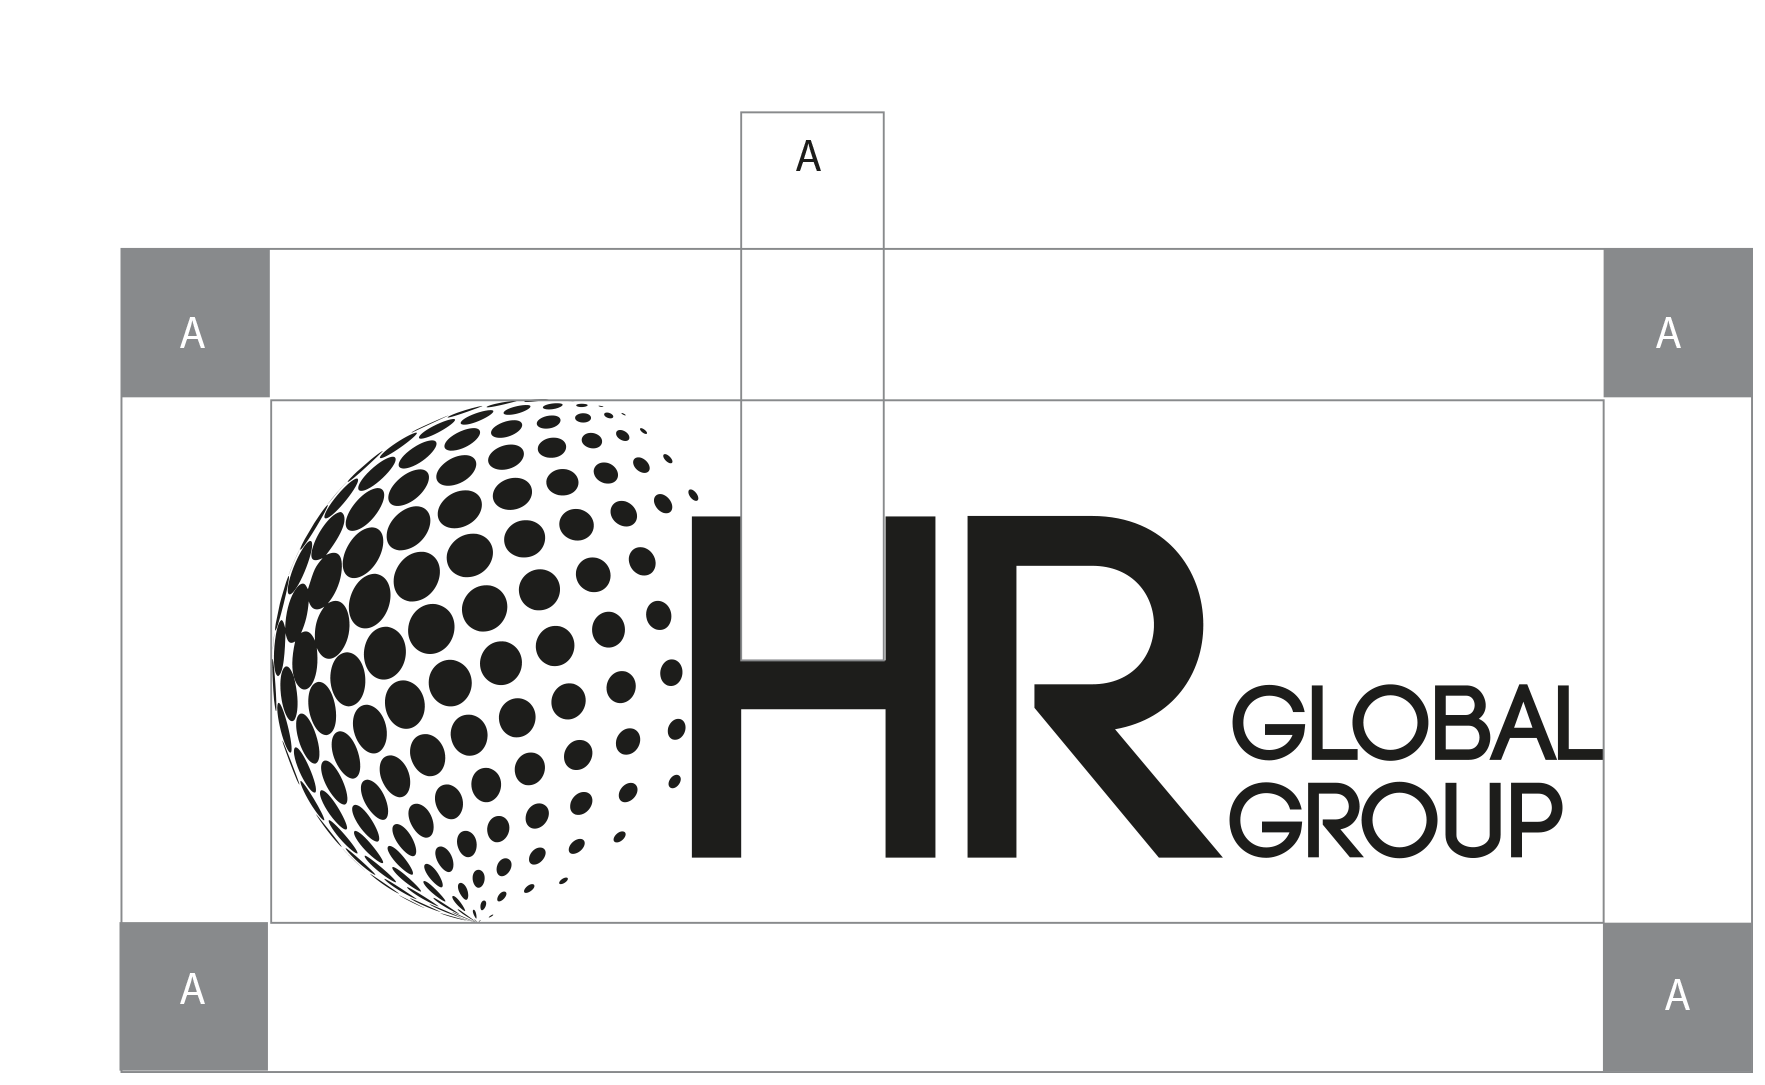 hr_global_logo_kitipury_projektowanie_graficzne_warszawa